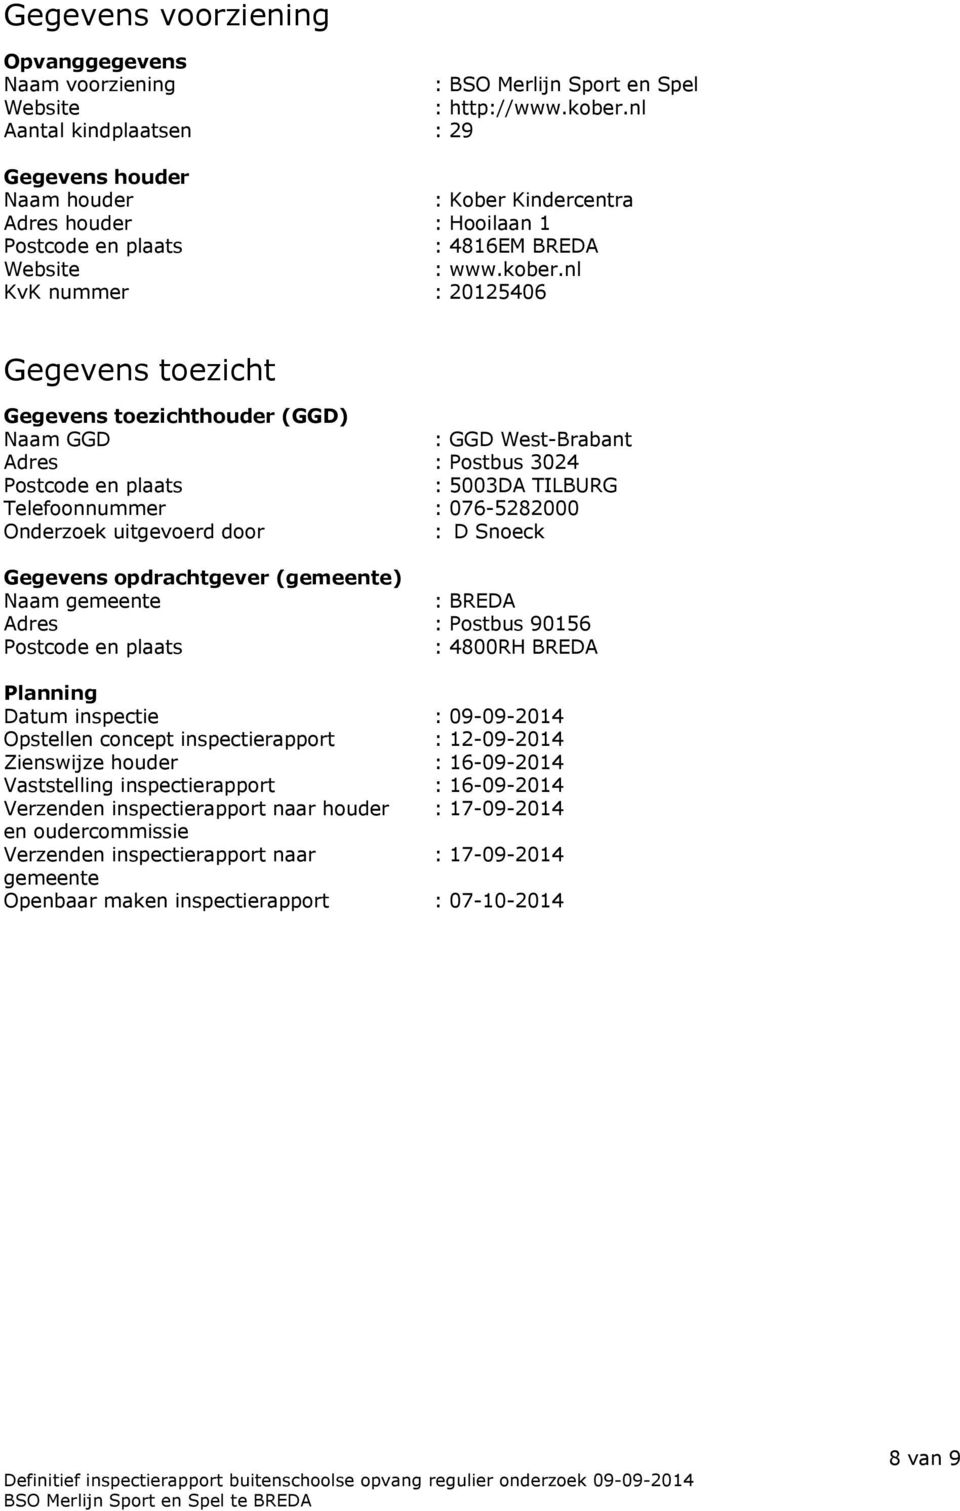 nl KvK nummer : 20125406 Gegevens toezicht Gegevens toezichthouder (GGD) Naam GGD : GGD West-Brabant Adres : Postbus 3024 Postcode en plaats : 5003DA TILBURG Telefoonnummer : 076-5282000 Onderzoek